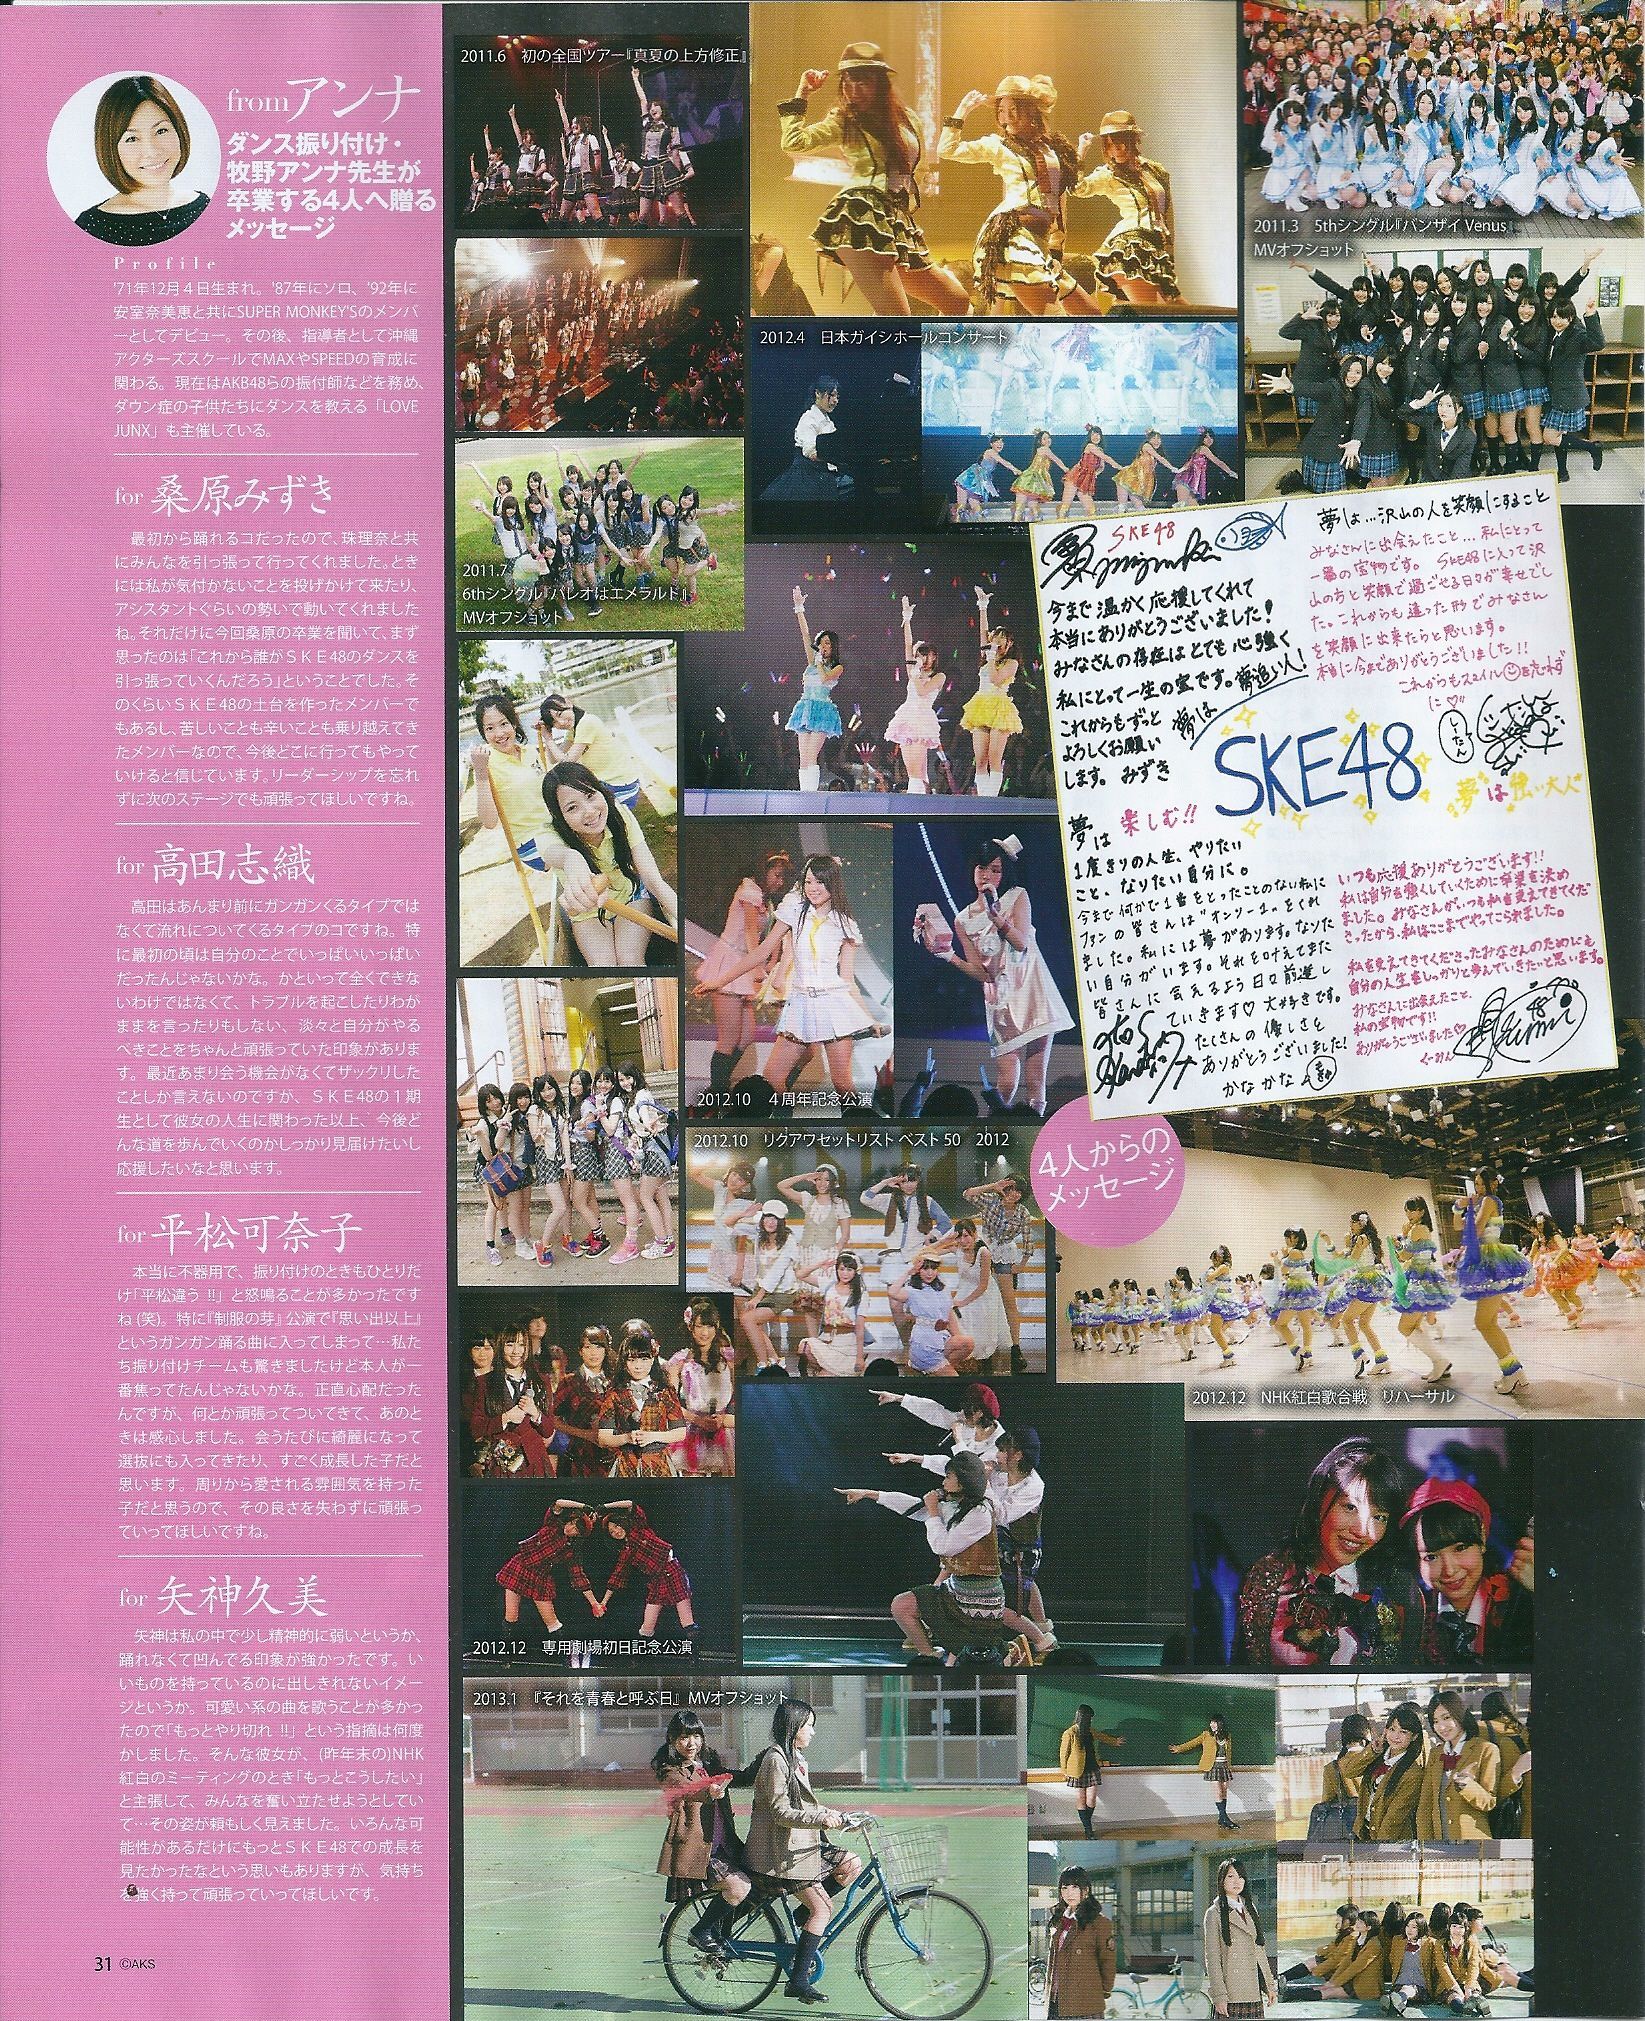 [Bomb Magazine] 2013年No.05 矢神久美 高橋みなみ 前田敦子